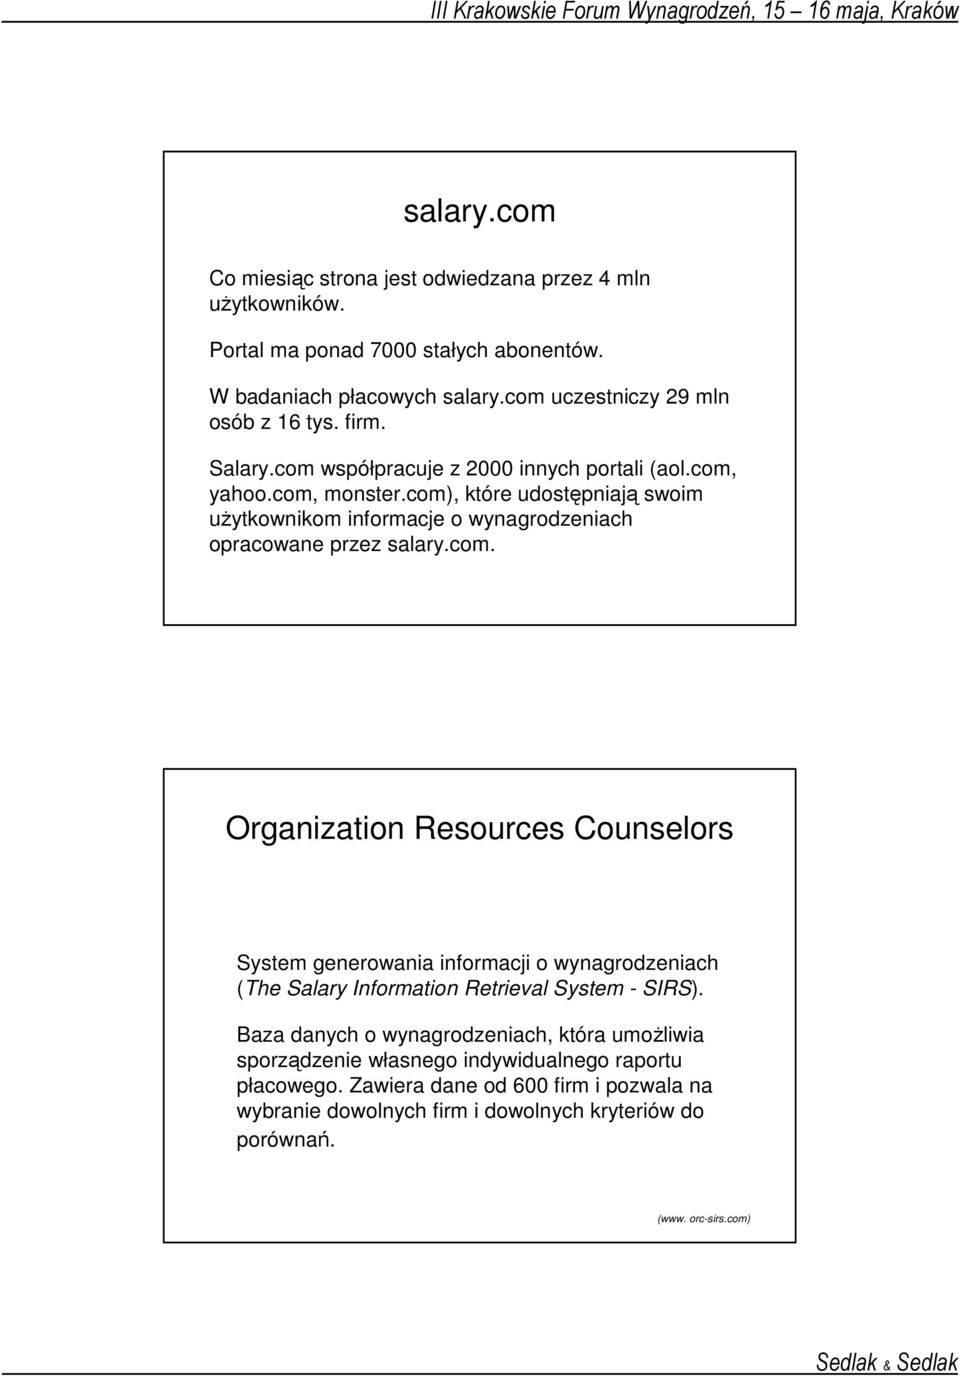 com. Organization Resources Counselors System generowania informacji o wynagrodzeniach (The Salary Information Retrieval System - SIRS).